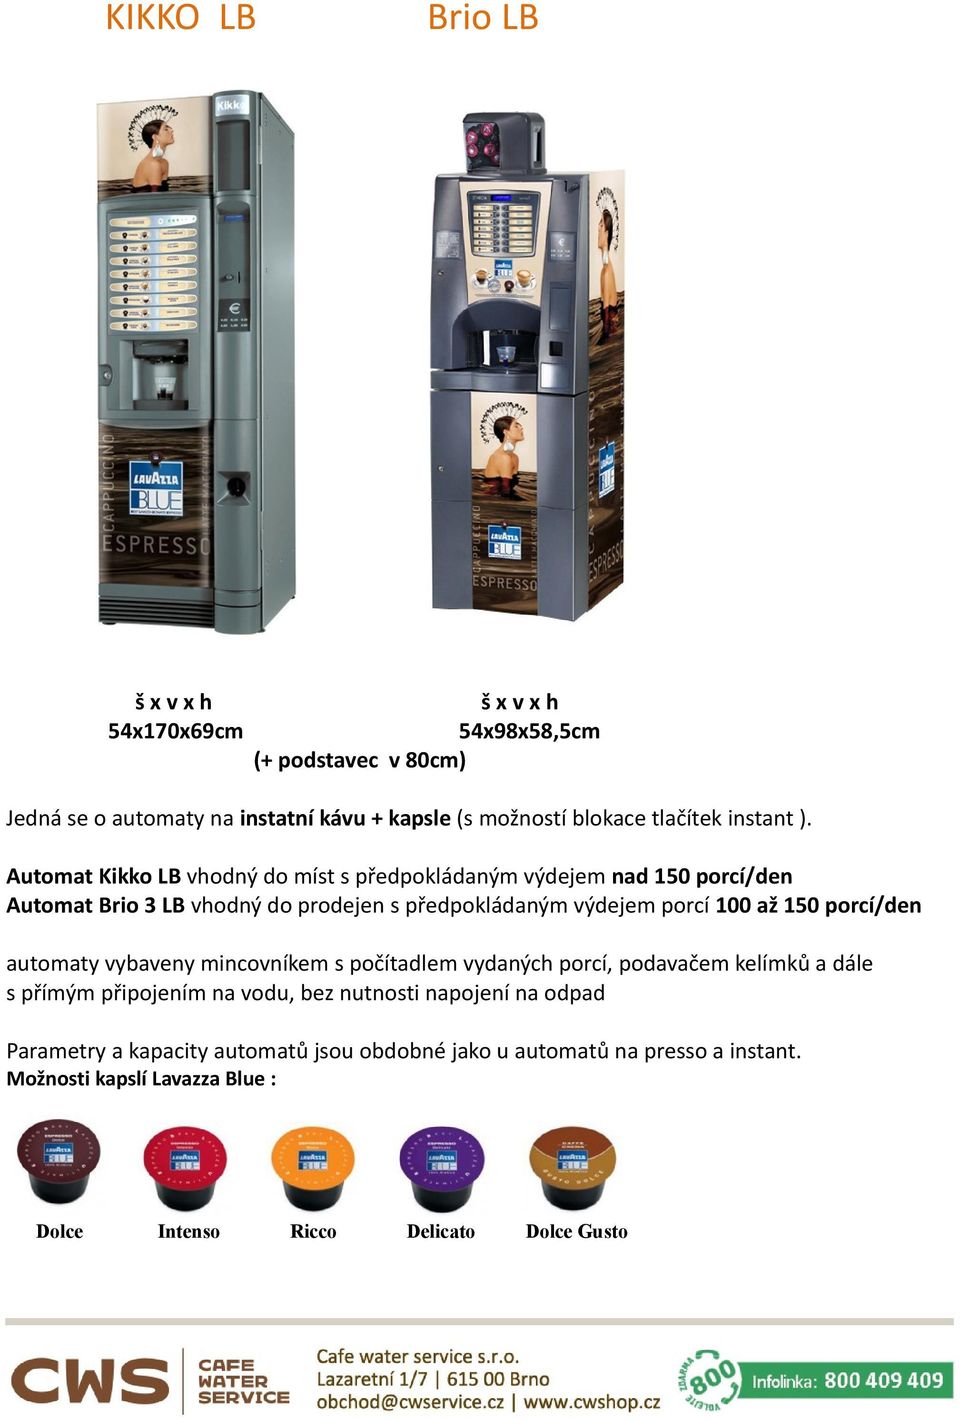 Automat Kikko LB vhodný do míst s předpokládaným výdejem nad 150 porcí/den Automat Brio 3 LB vhodný do prodejen s předpokládaným výdejem porcí 100 až 150